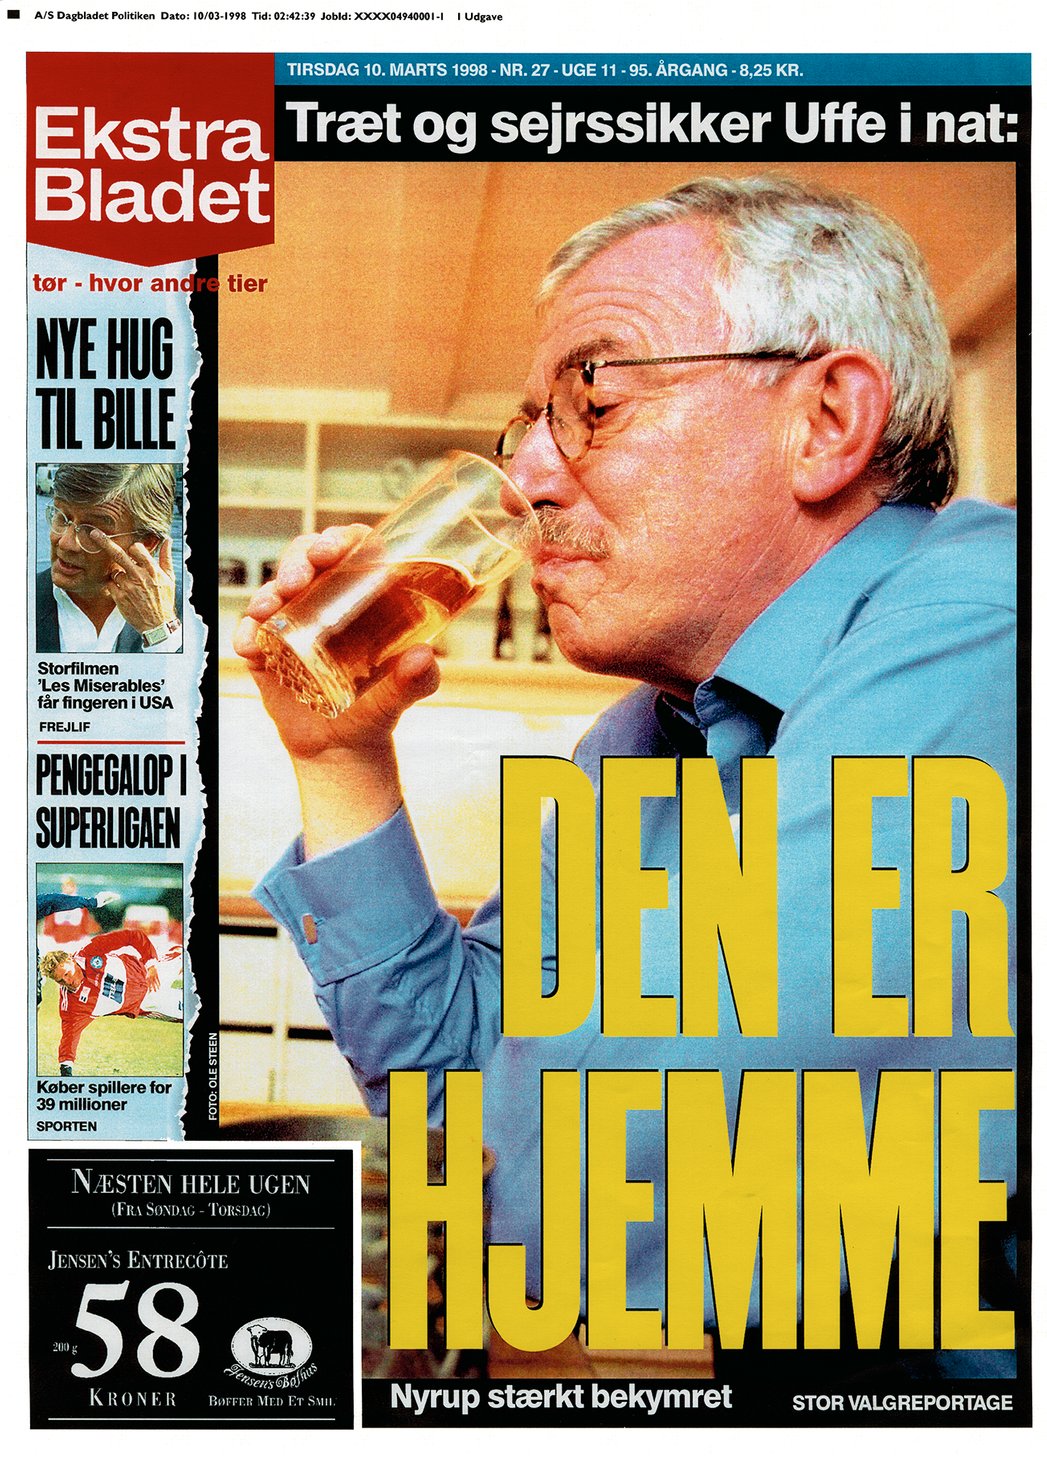 Uffe Ellemann election 1998